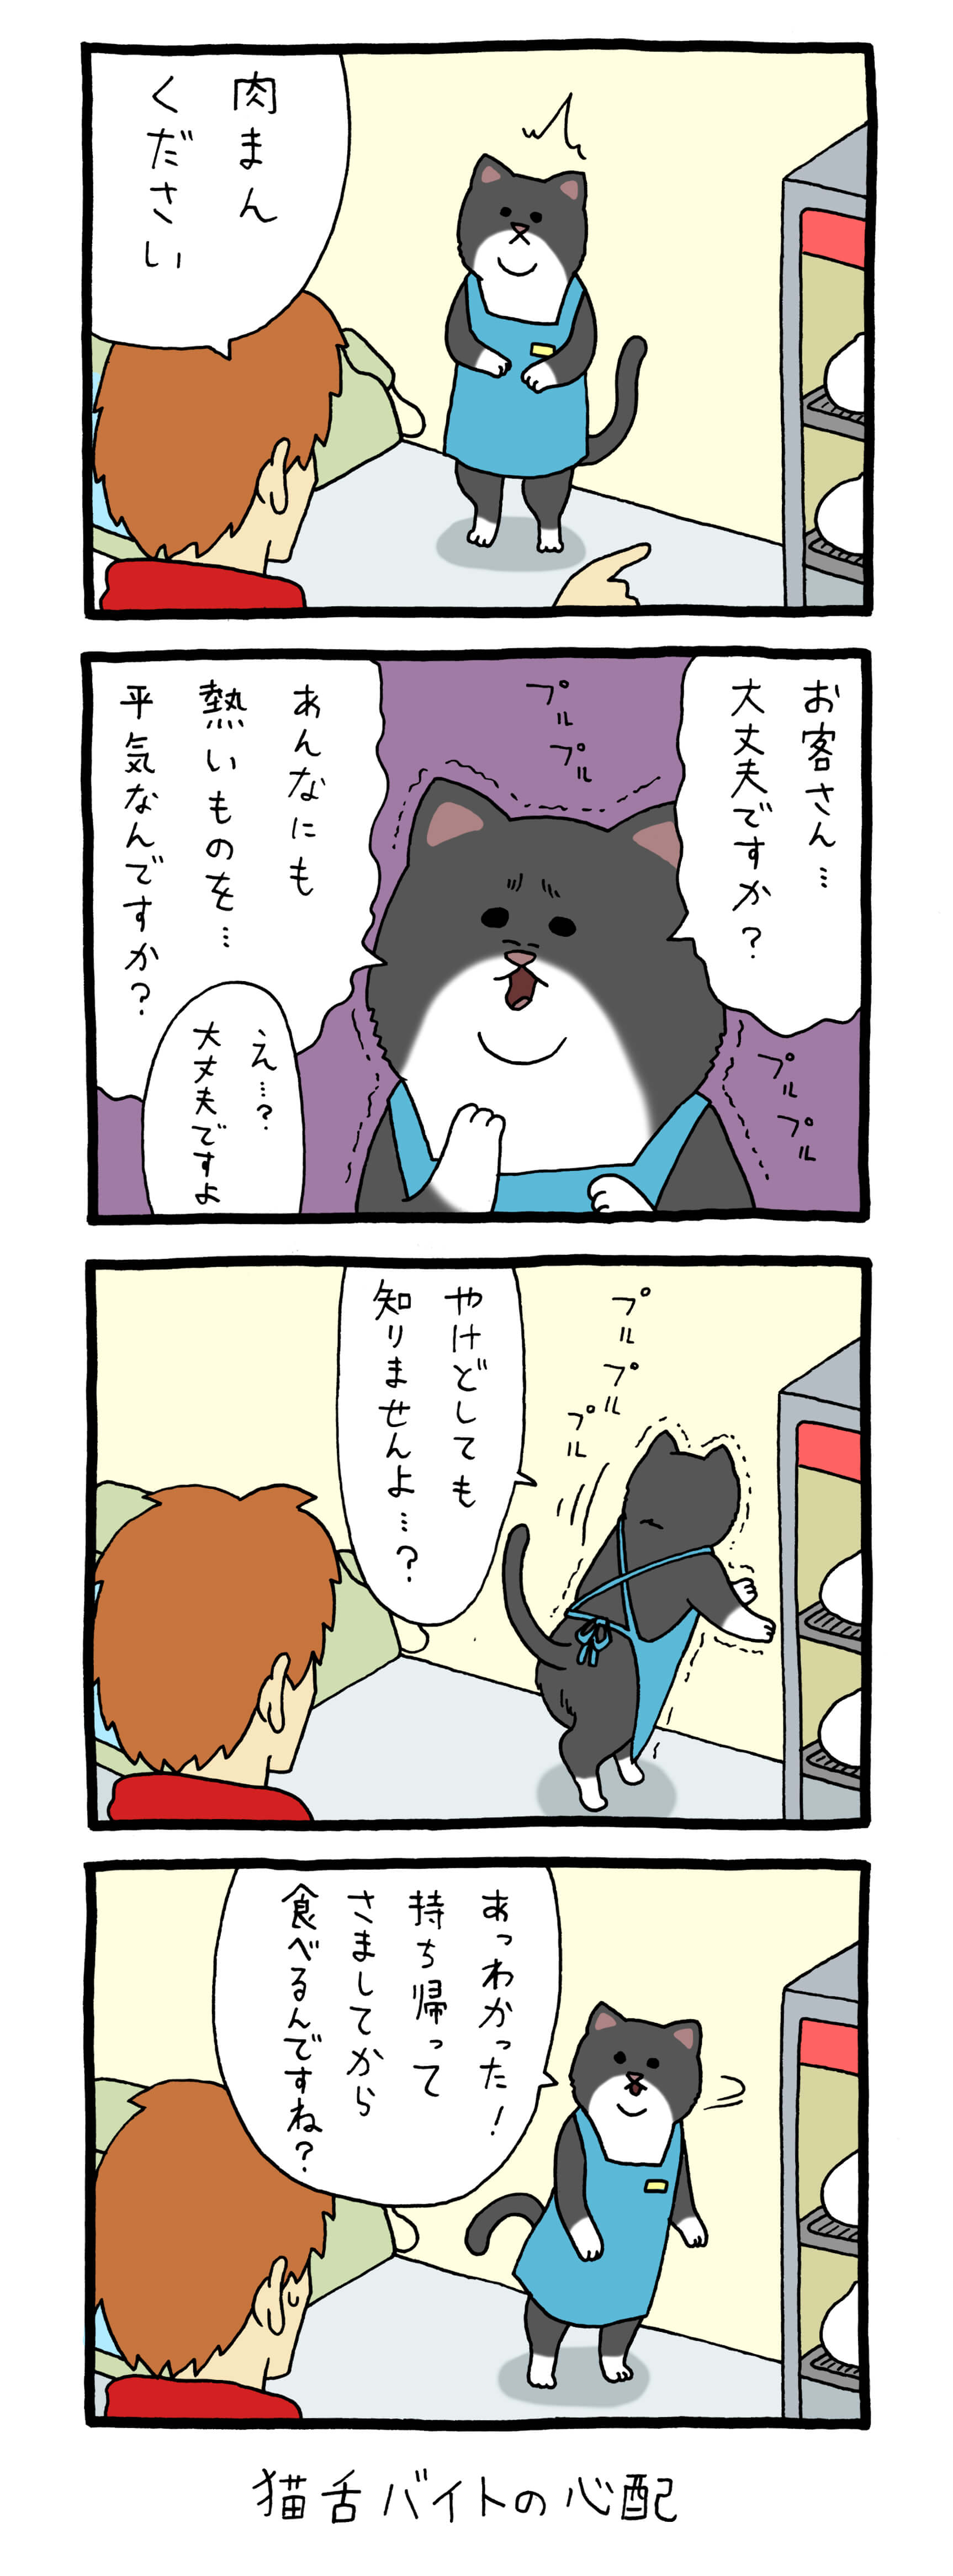 レジネコ 漫画 キューライス 4コマ ネコ 猫 フロム・エー